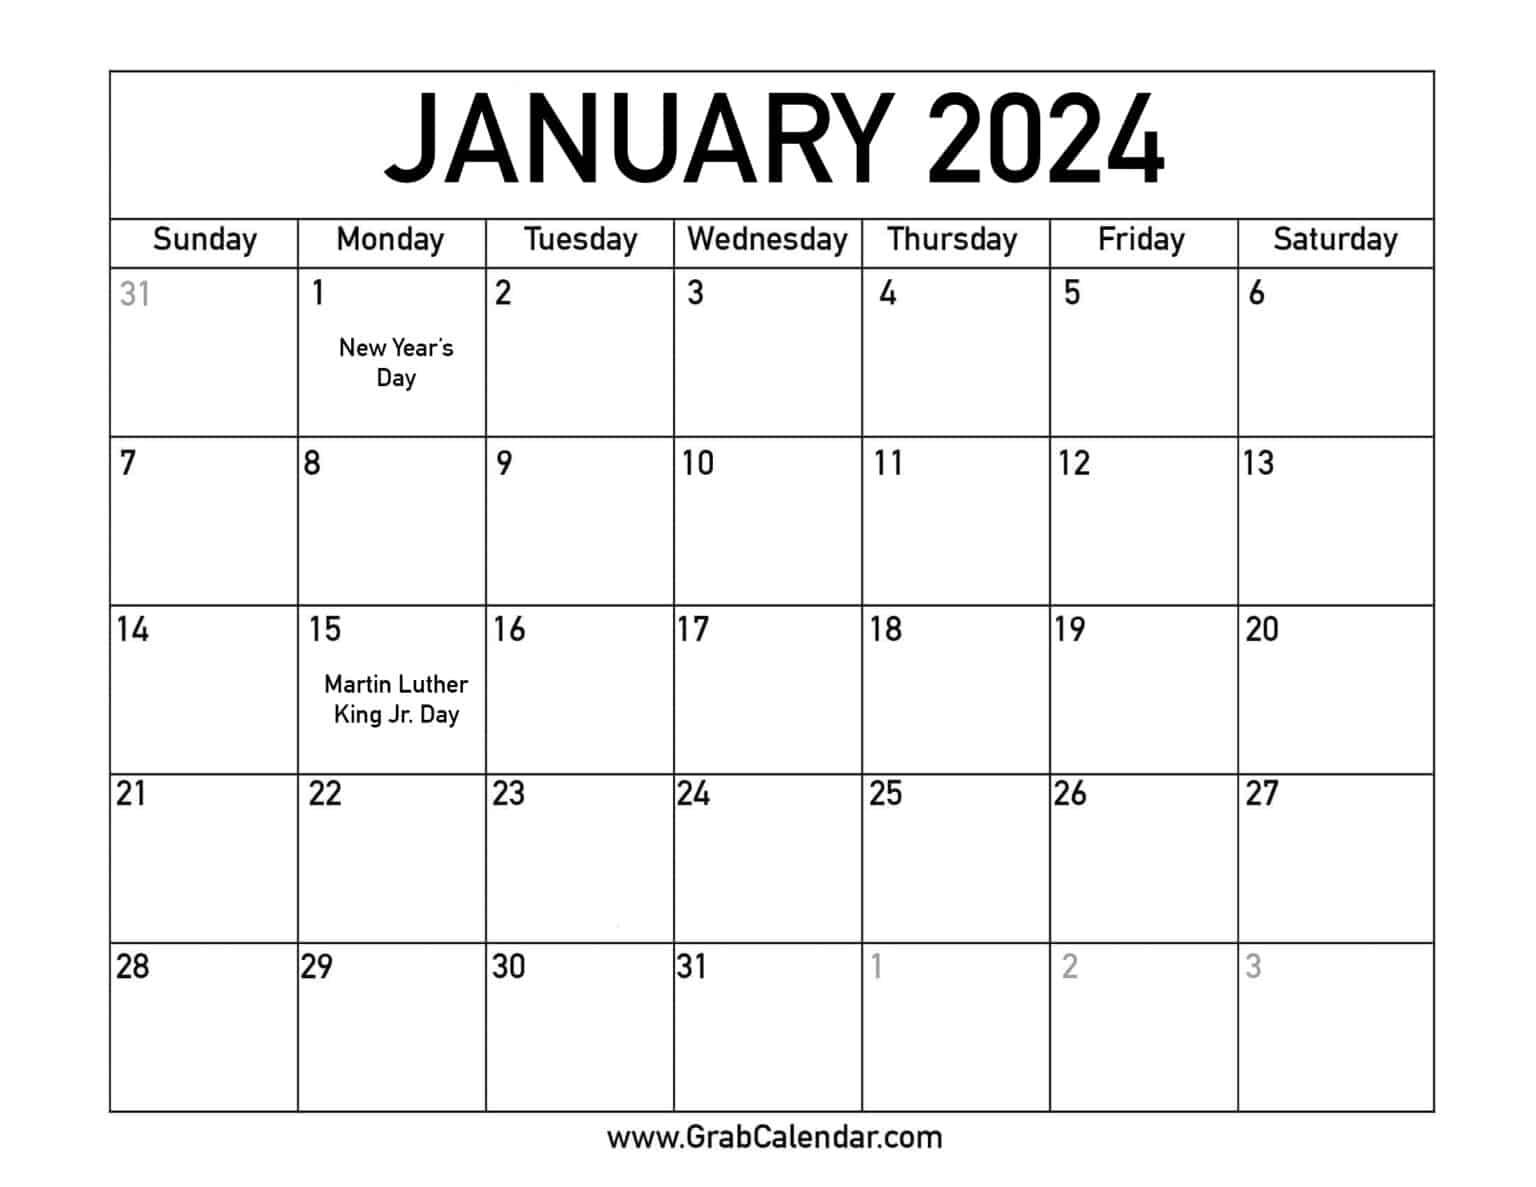 Show Me A Calendar For January 2024 Days Broward Schools Calendar 2024